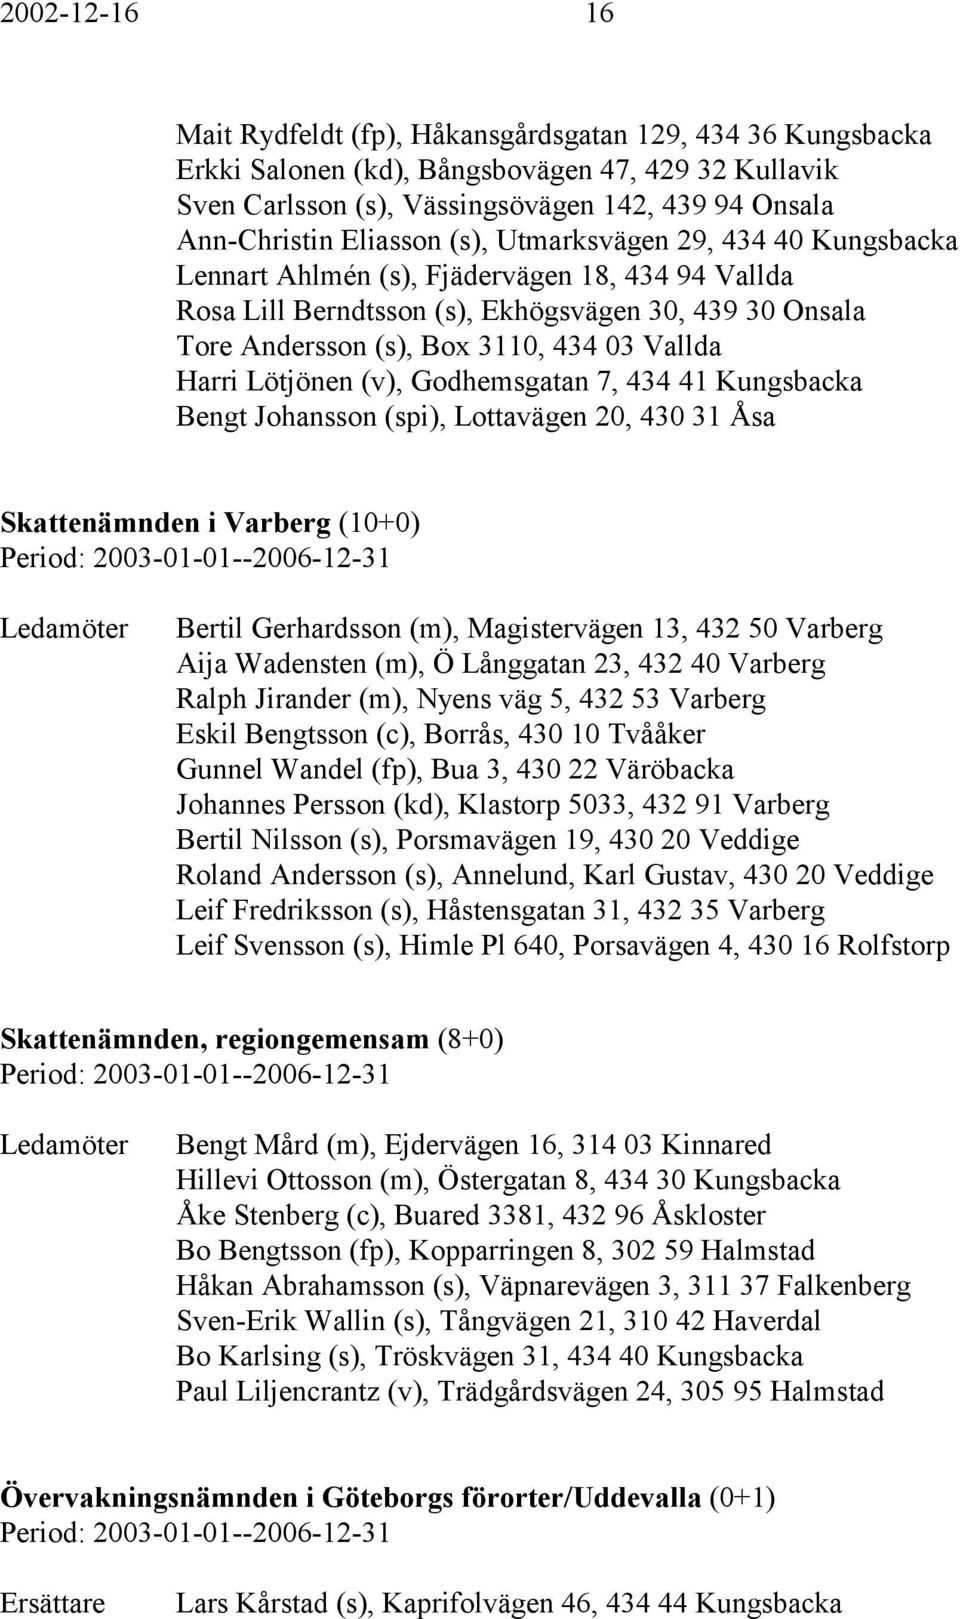 Harri Lötjönen (v), Godhemsgatan 7, 434 41 Kungsbacka Bengt Johansson (spi), Lottavägen 20, 430 31 Åsa Skattenämnden i Varberg (10+0) Bertil Gerhardsson (m), Magistervägen 13, 432 50 Varberg Aija